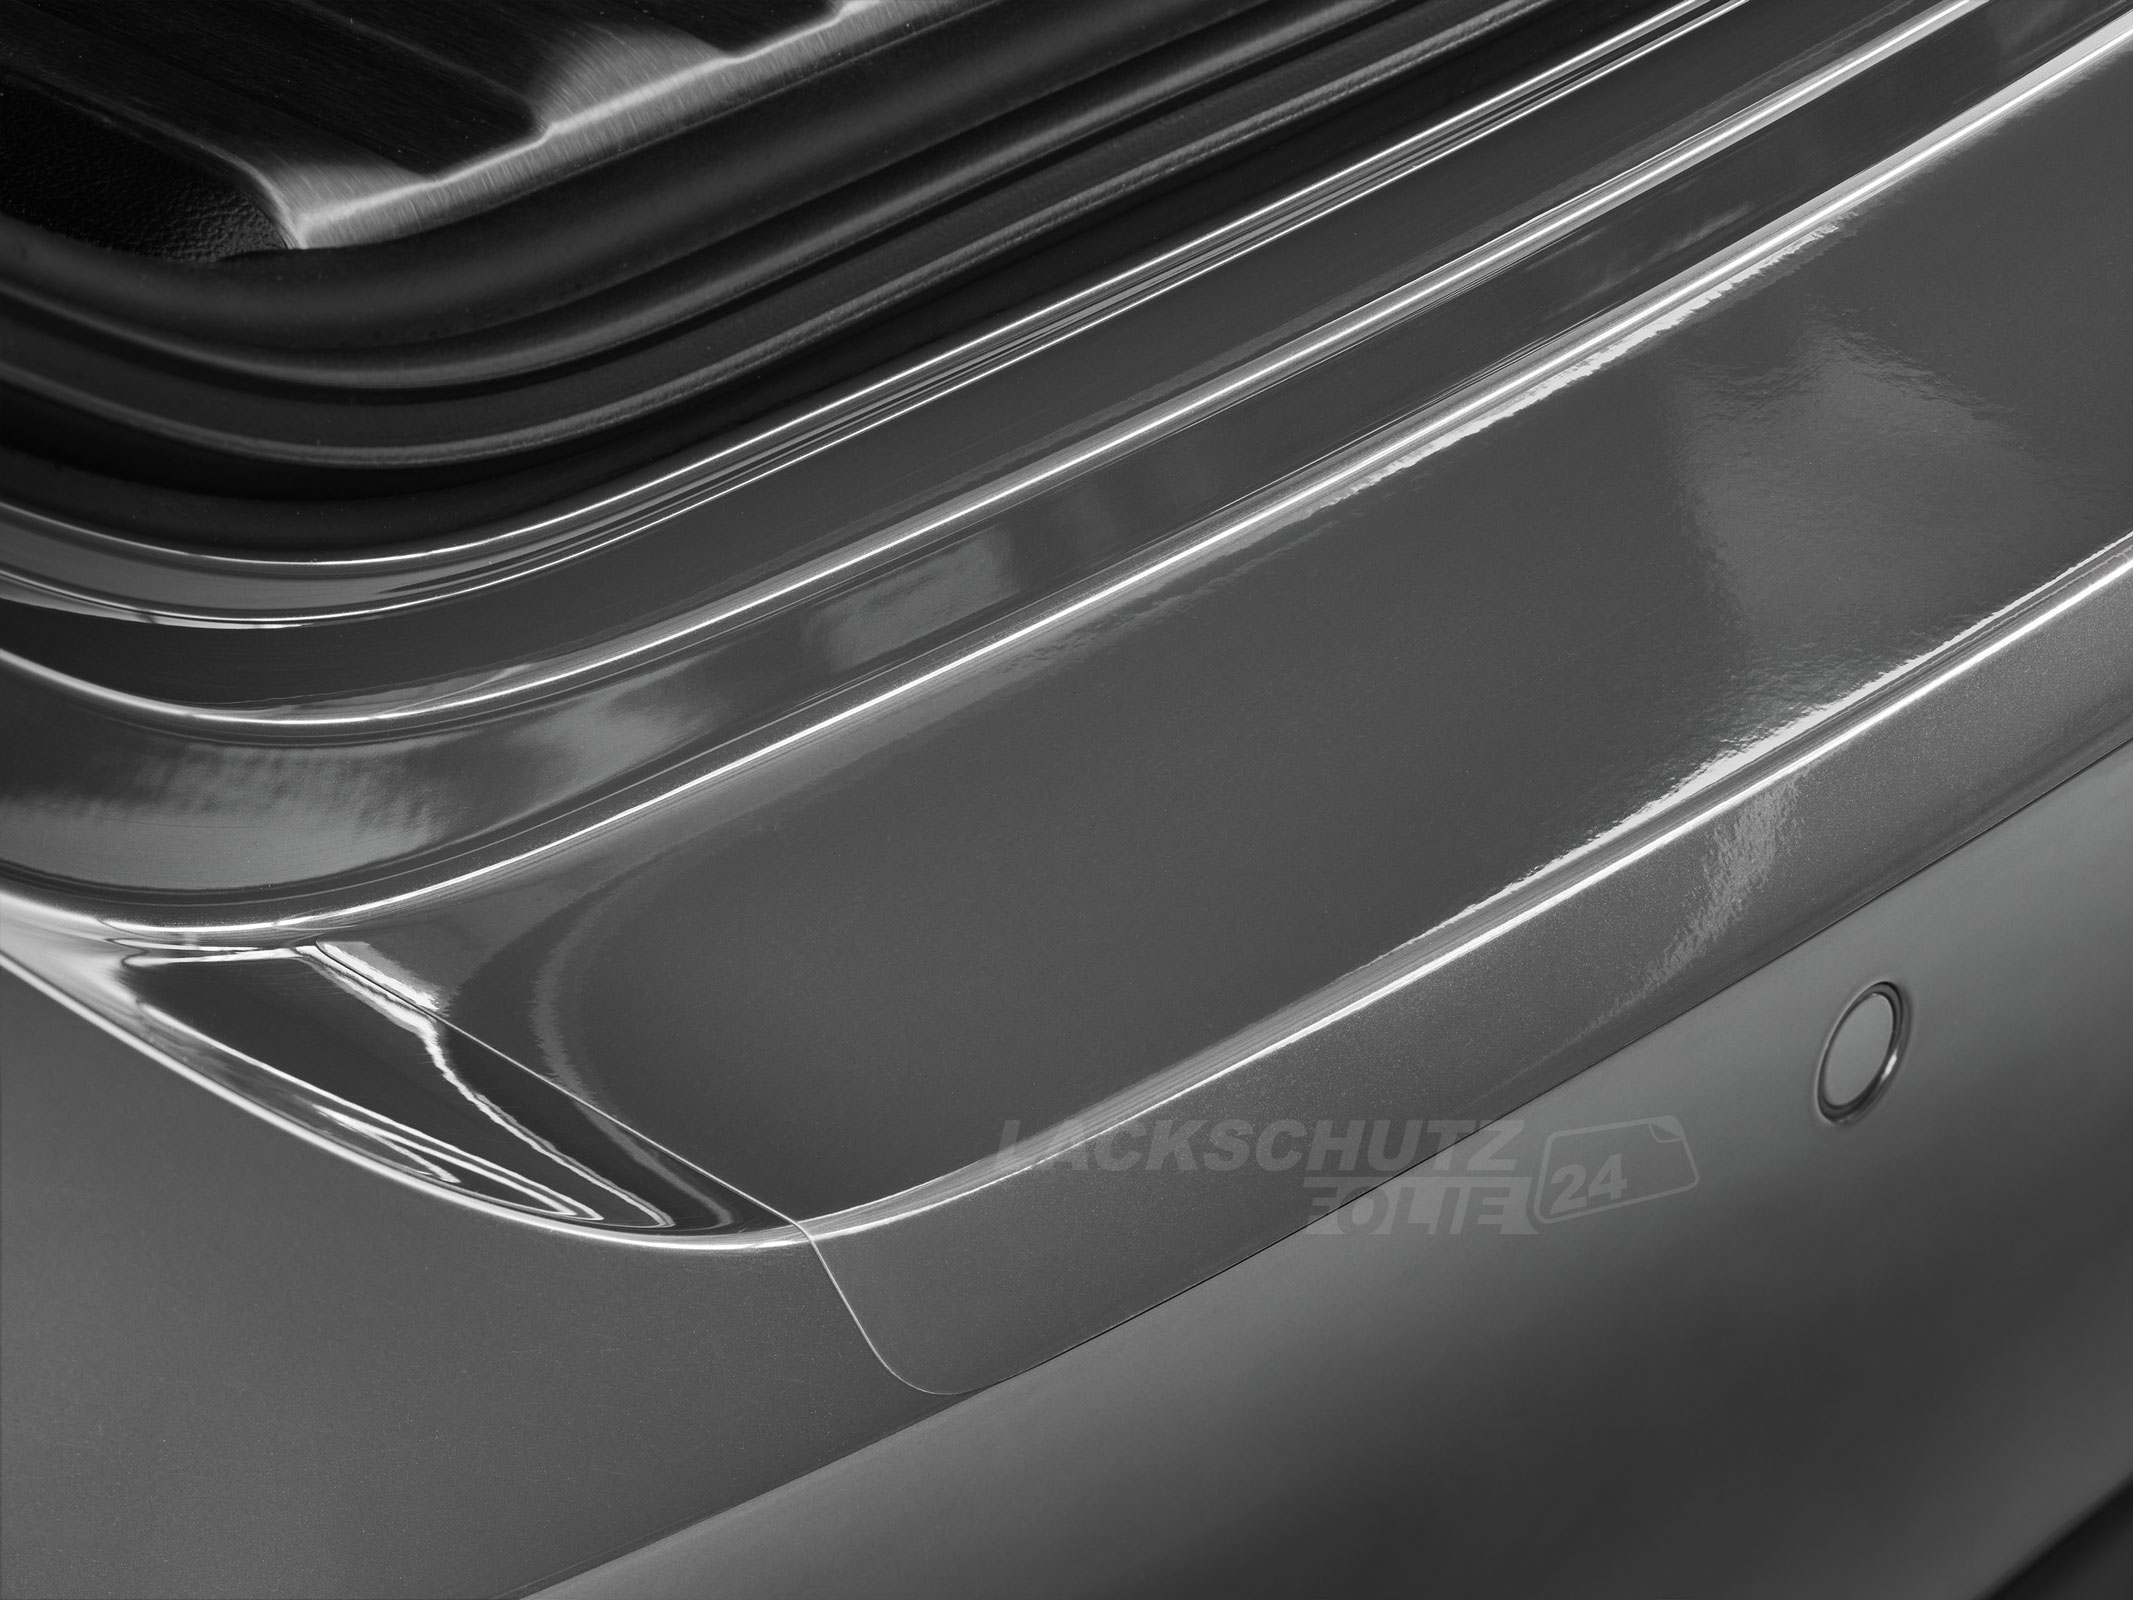 Ladekantenschutzfolie - Transparent Glatt Hochglänzend für Mazda 2 Typ DY, bis BJ 2007